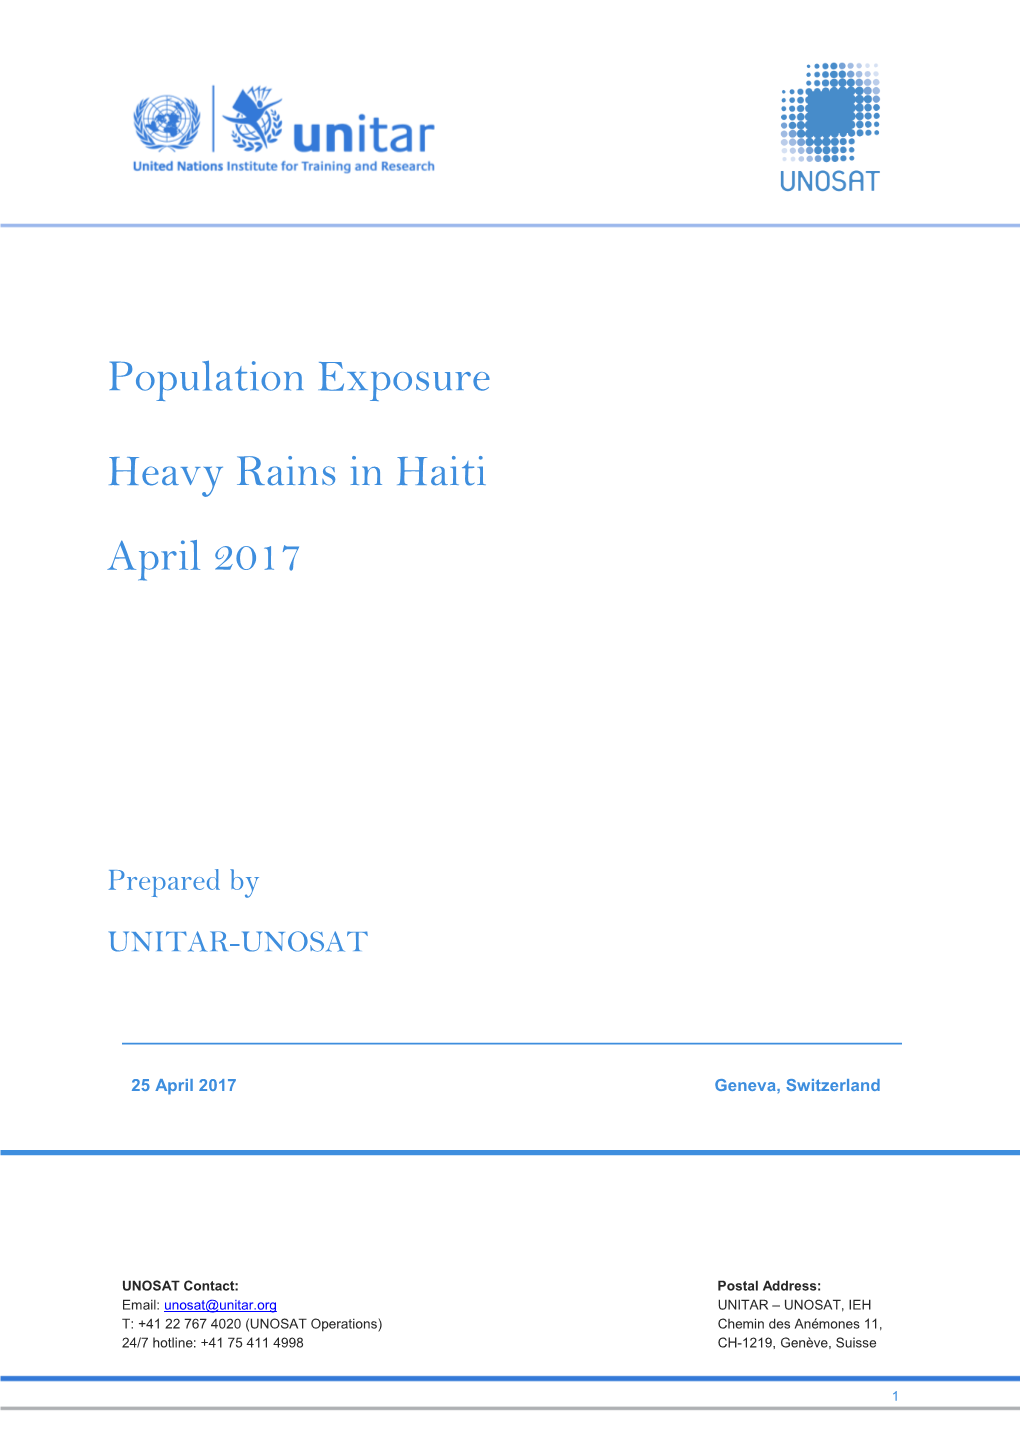 Population Exposure Heavy Rains in Haiti April 2017